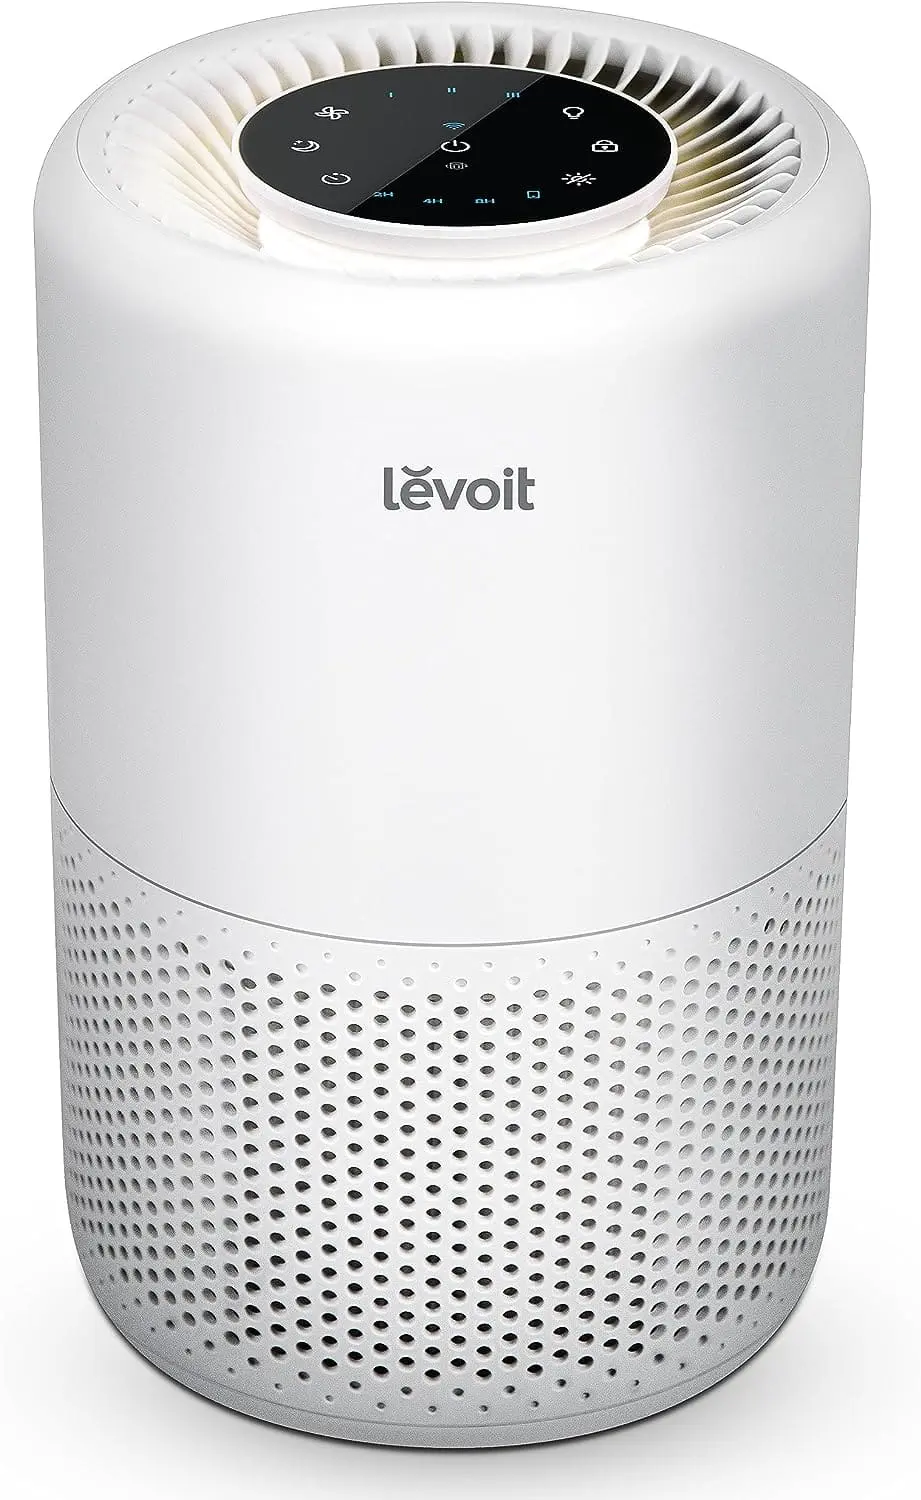 LEVOIT Air Purifier Core 200S